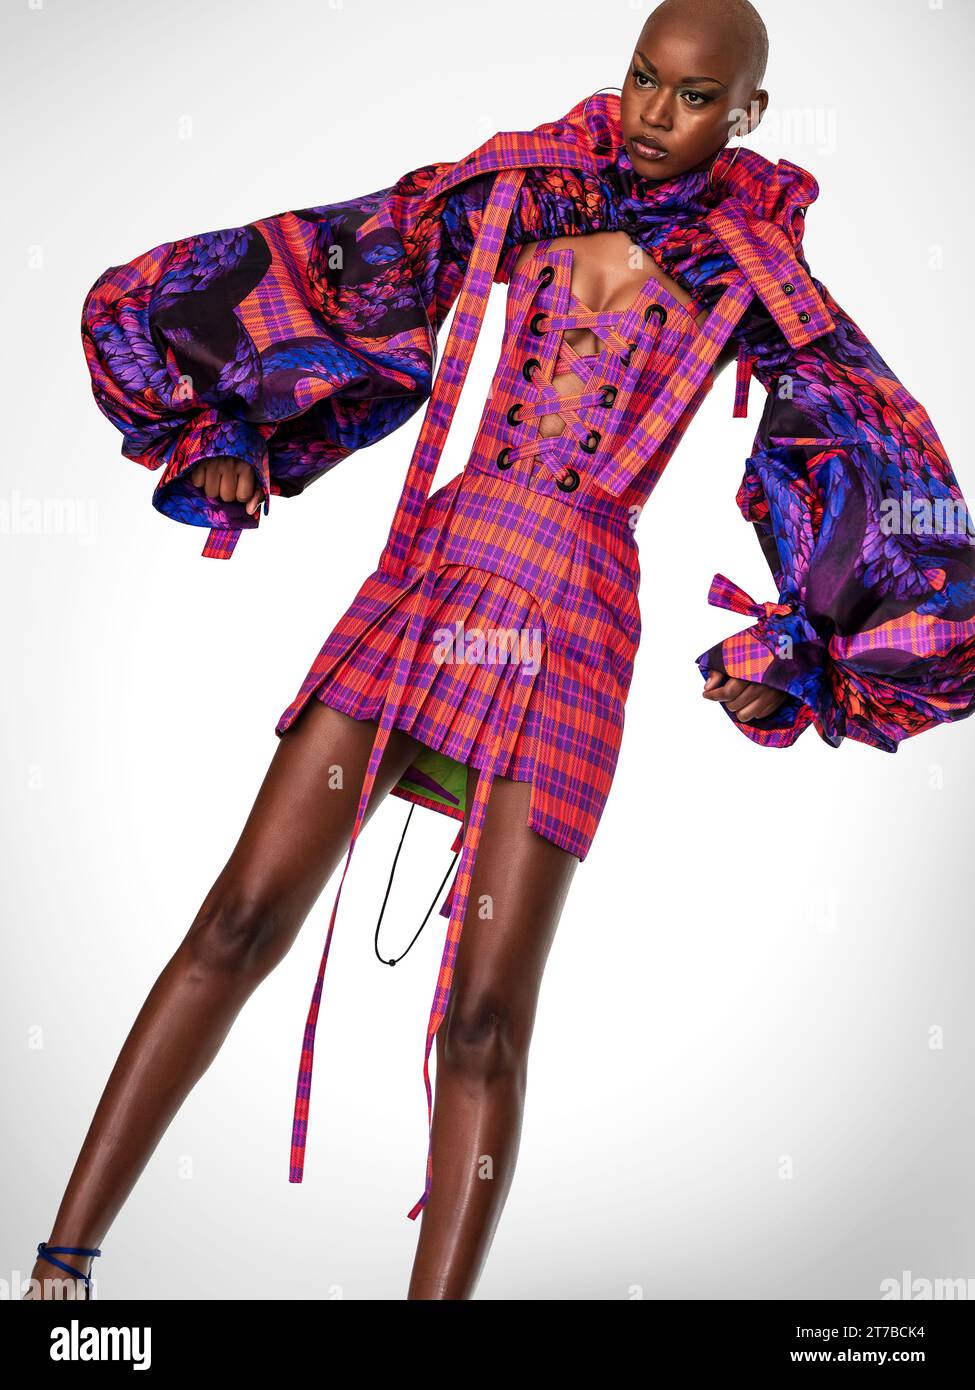 Portrait intégral d'un jeune mannequin africain portant une robe rose et violette extravagante. Banque D'Images